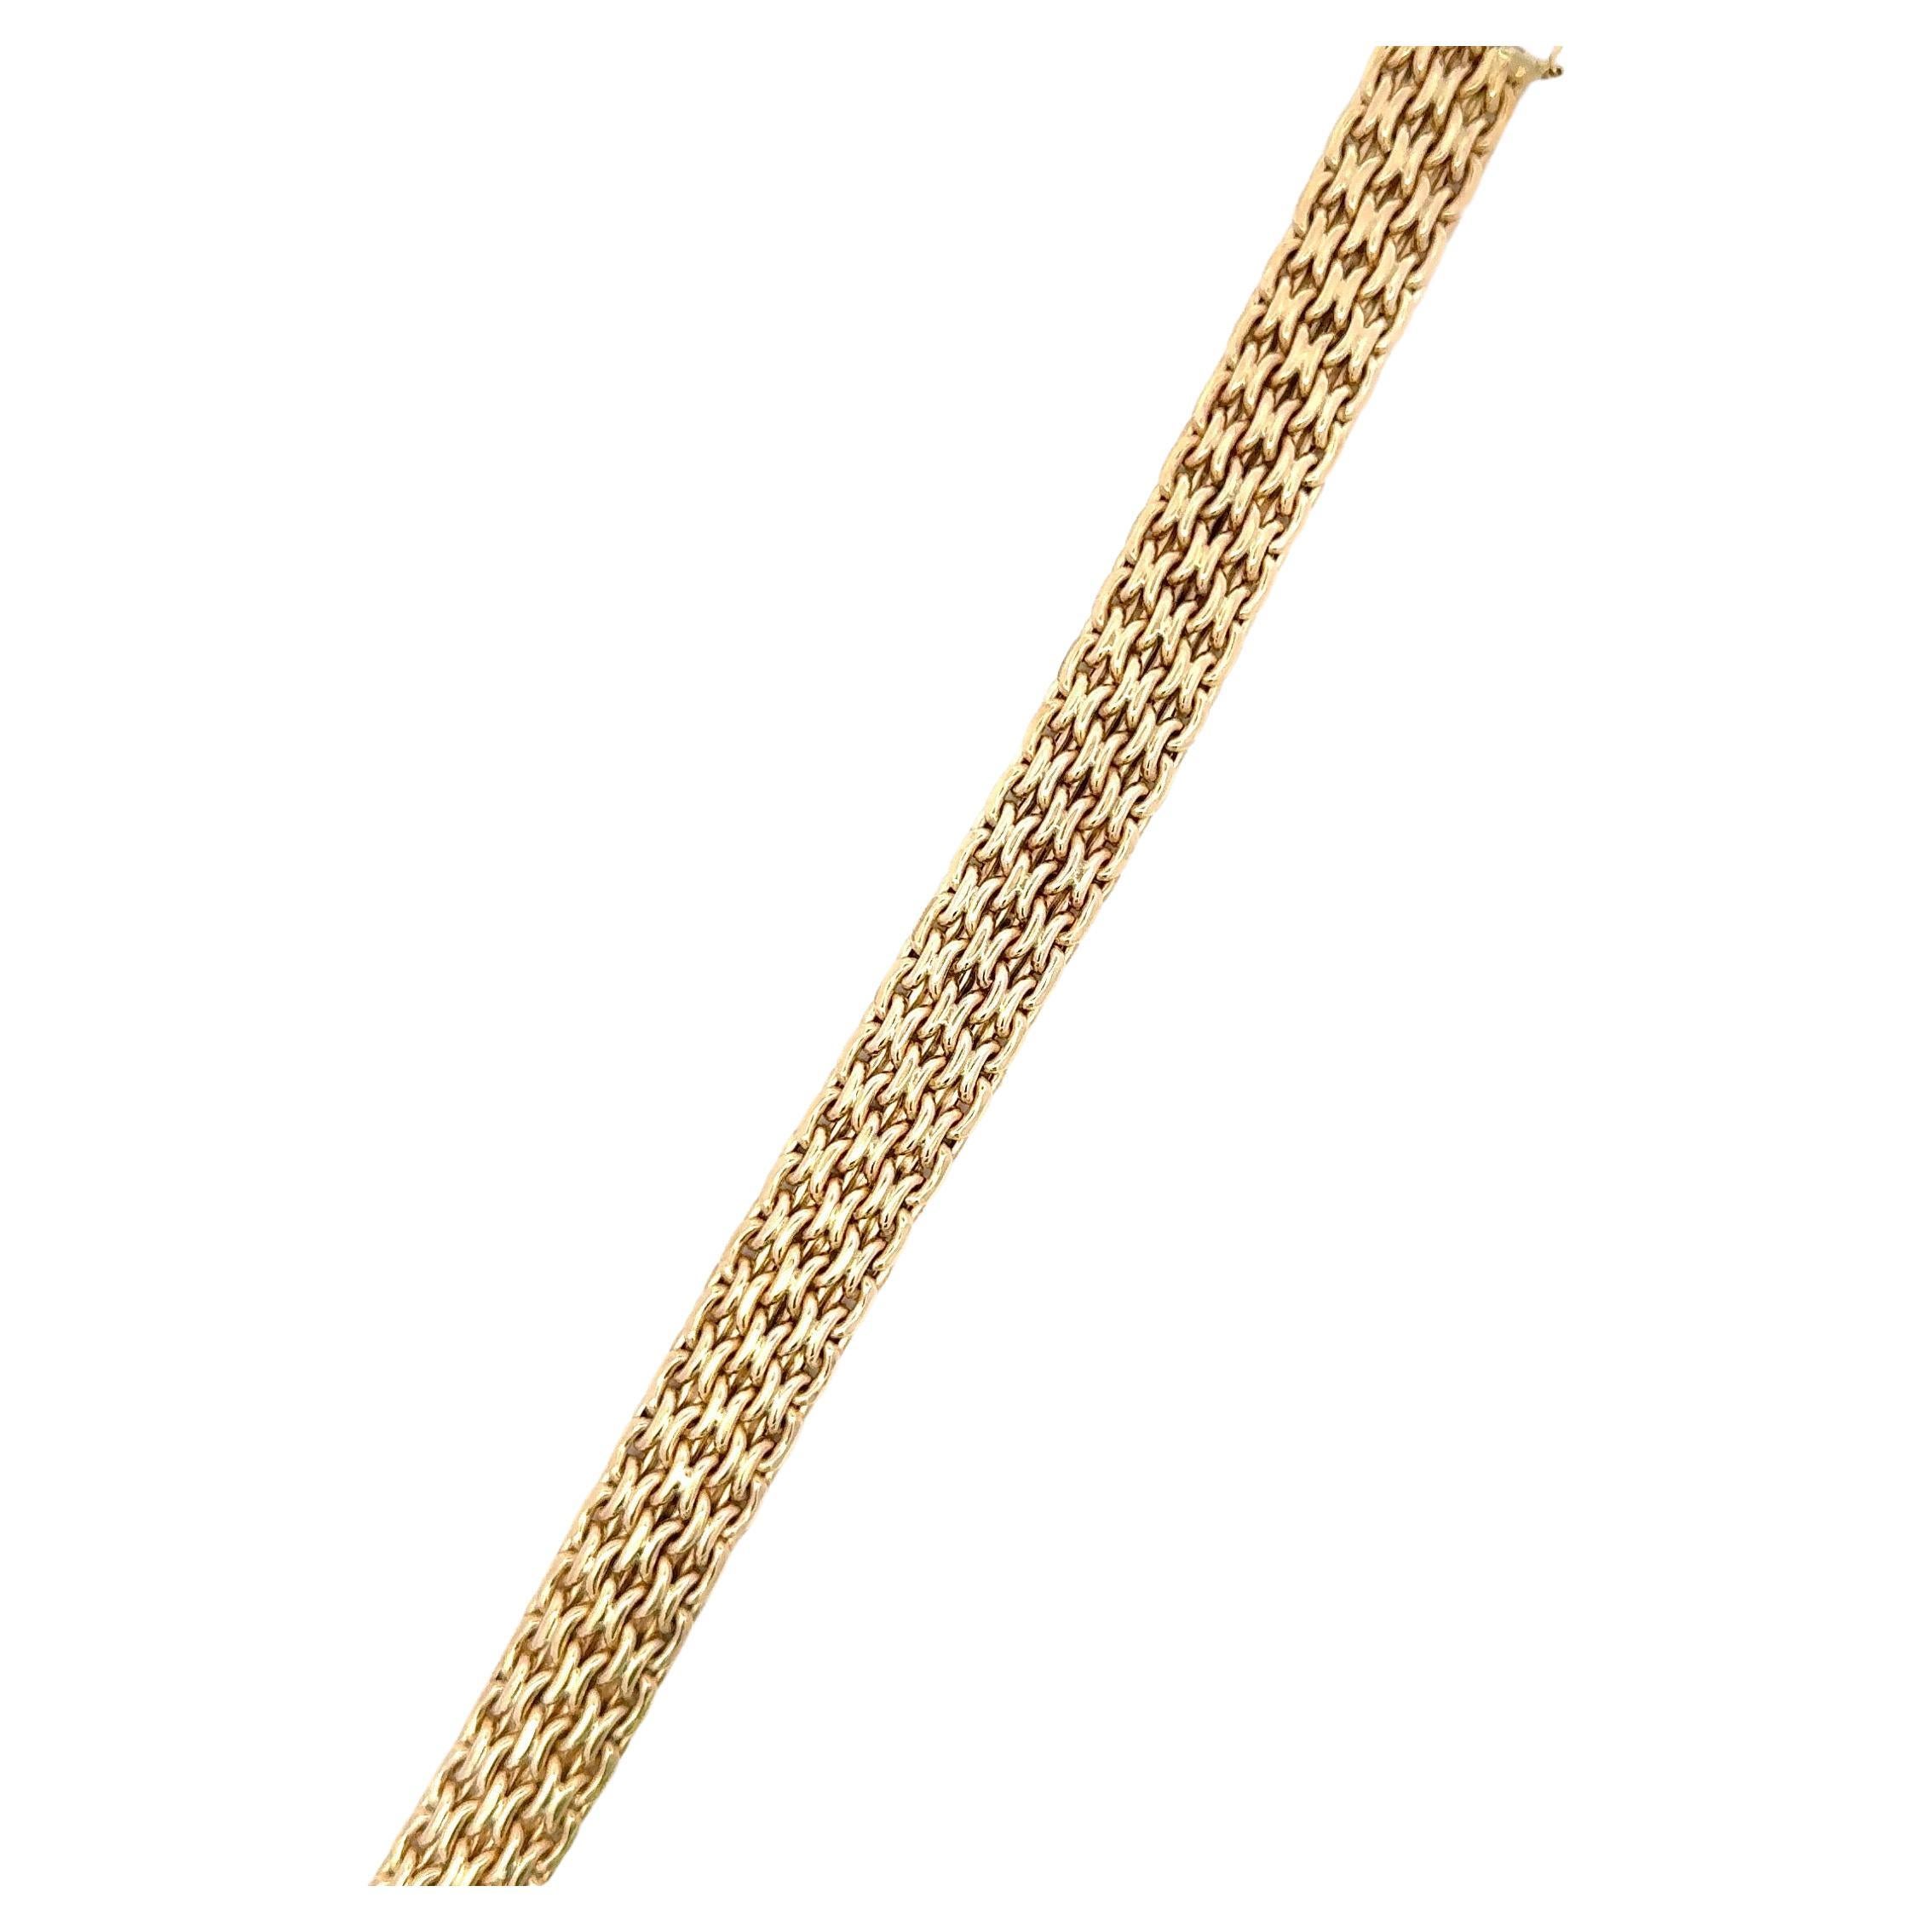 Italienisches, geflochtenes Armband aus 14 Karat Gelbgold mit einem Gewicht von 15,9 Gramm. 
Weitere Gliederarmbänder verfügbar
Suche Harbor Diamonds